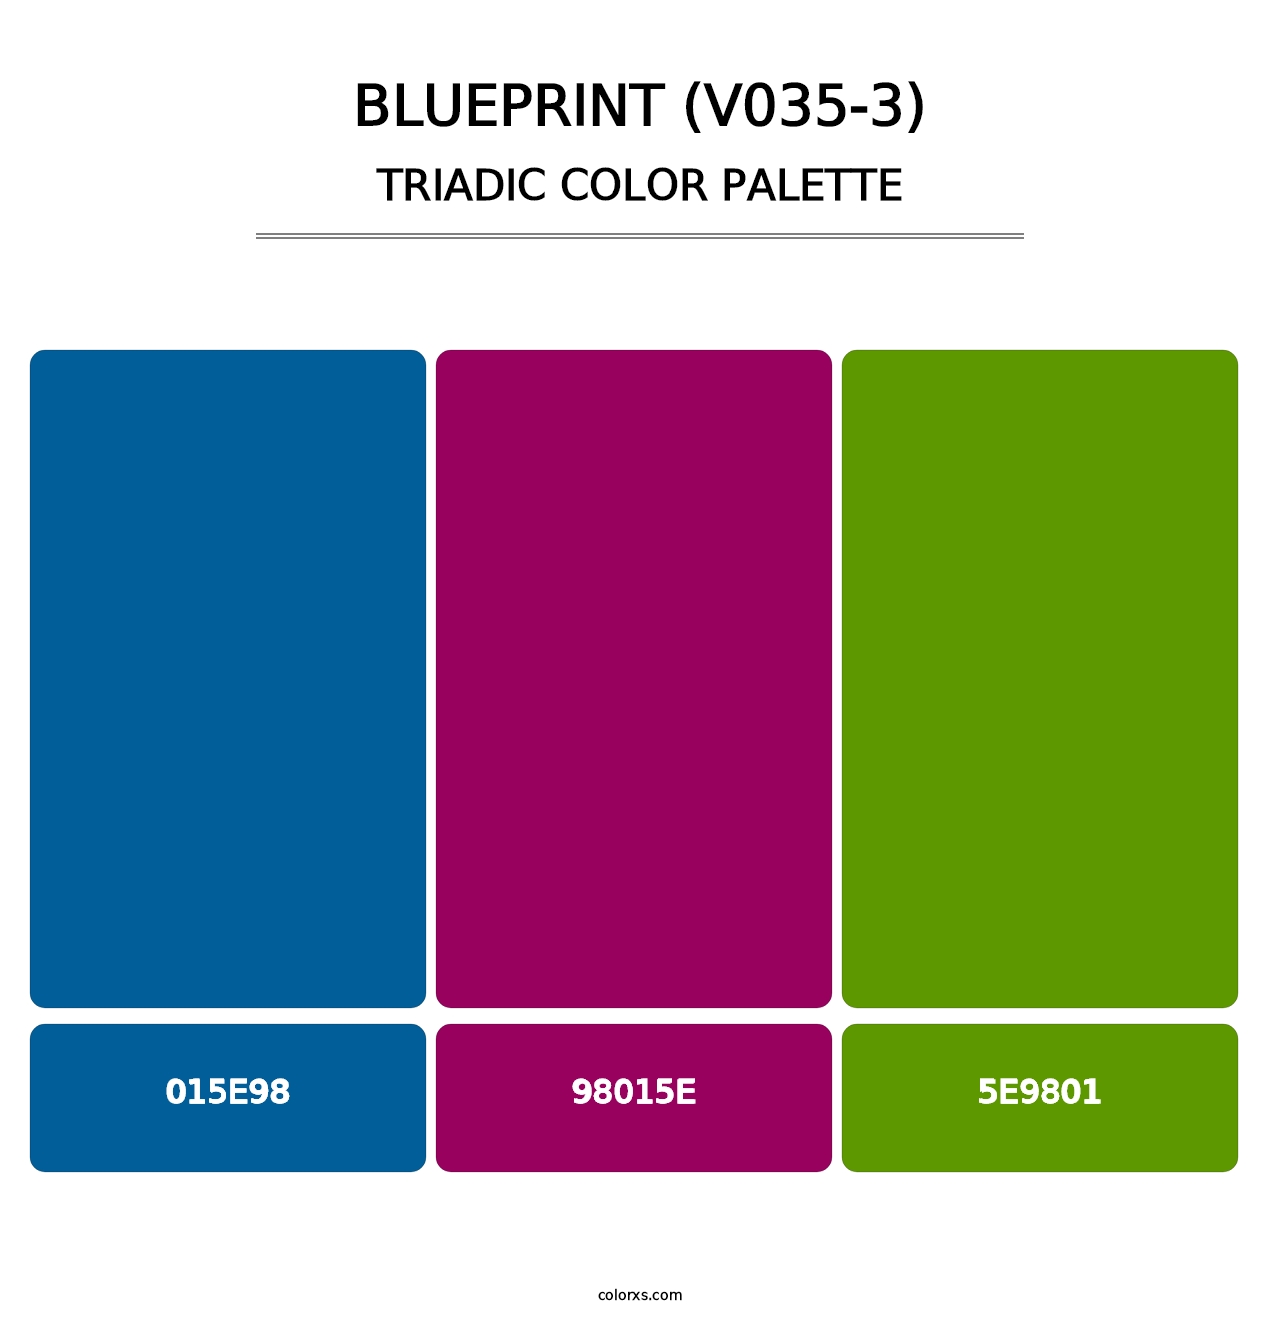 Blueprint (V035-3) - Triadic Color Palette